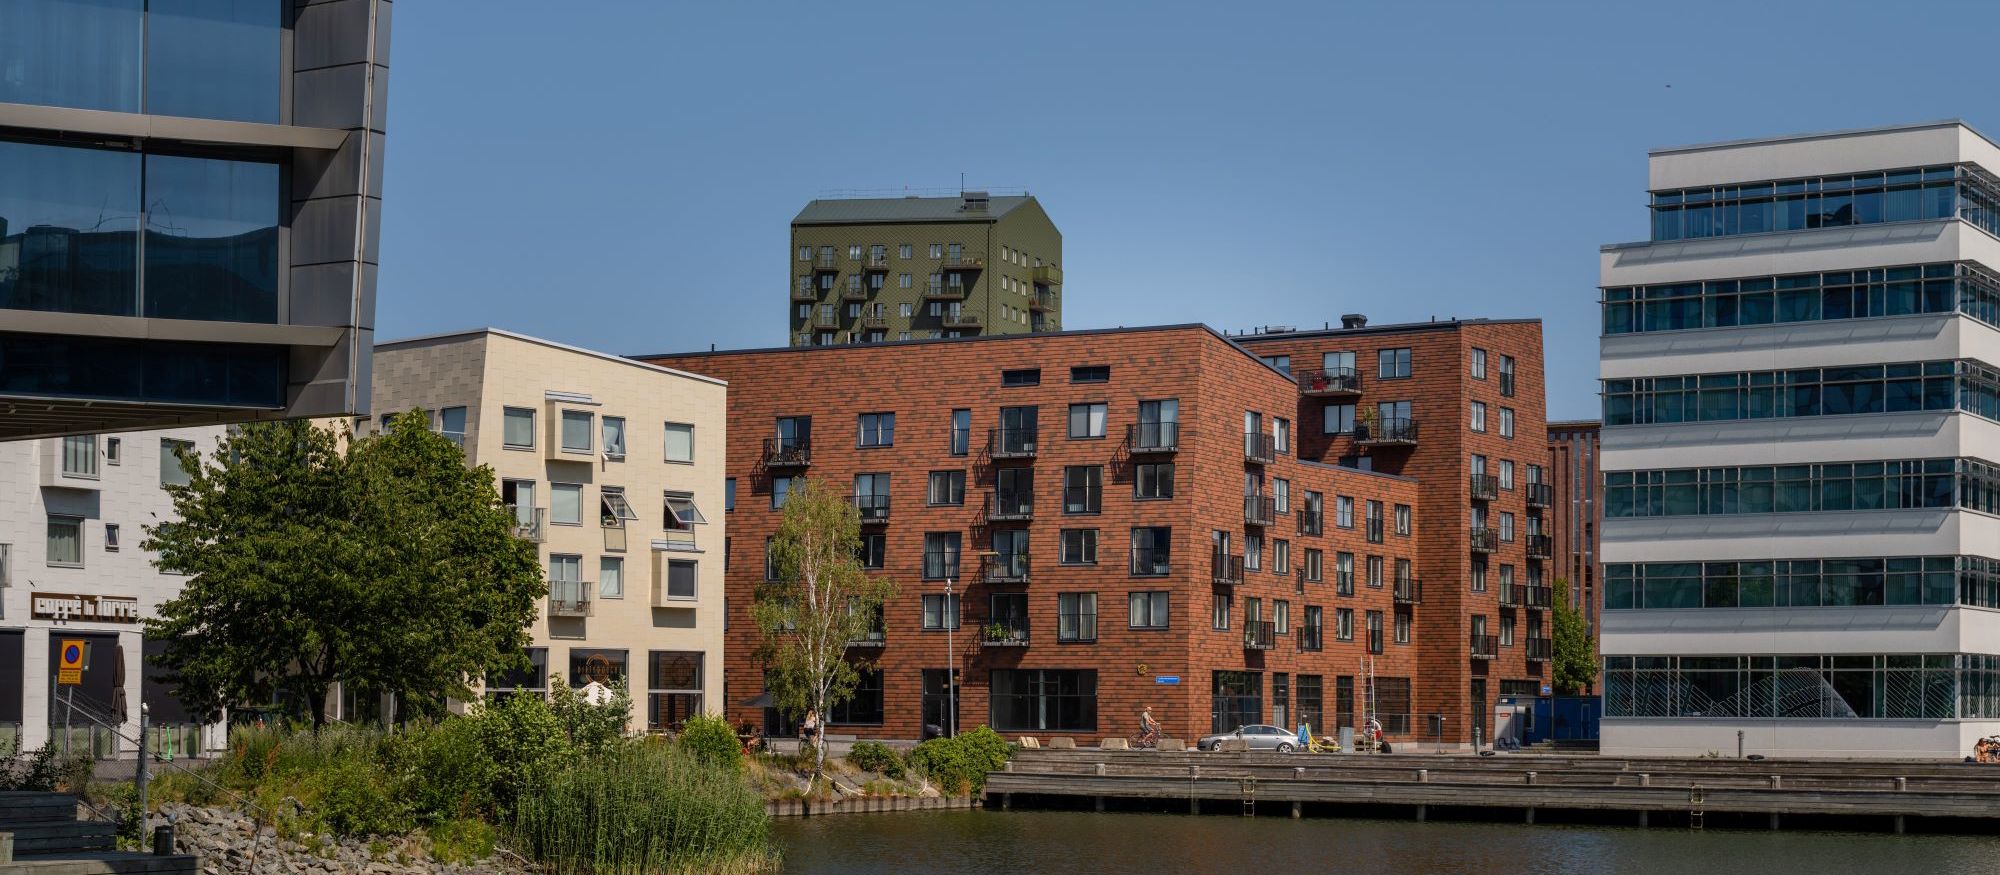 Brf Blanka, Göteborg: bruna flerfamiljshus med omgivande byggnader speglar sig i vatten